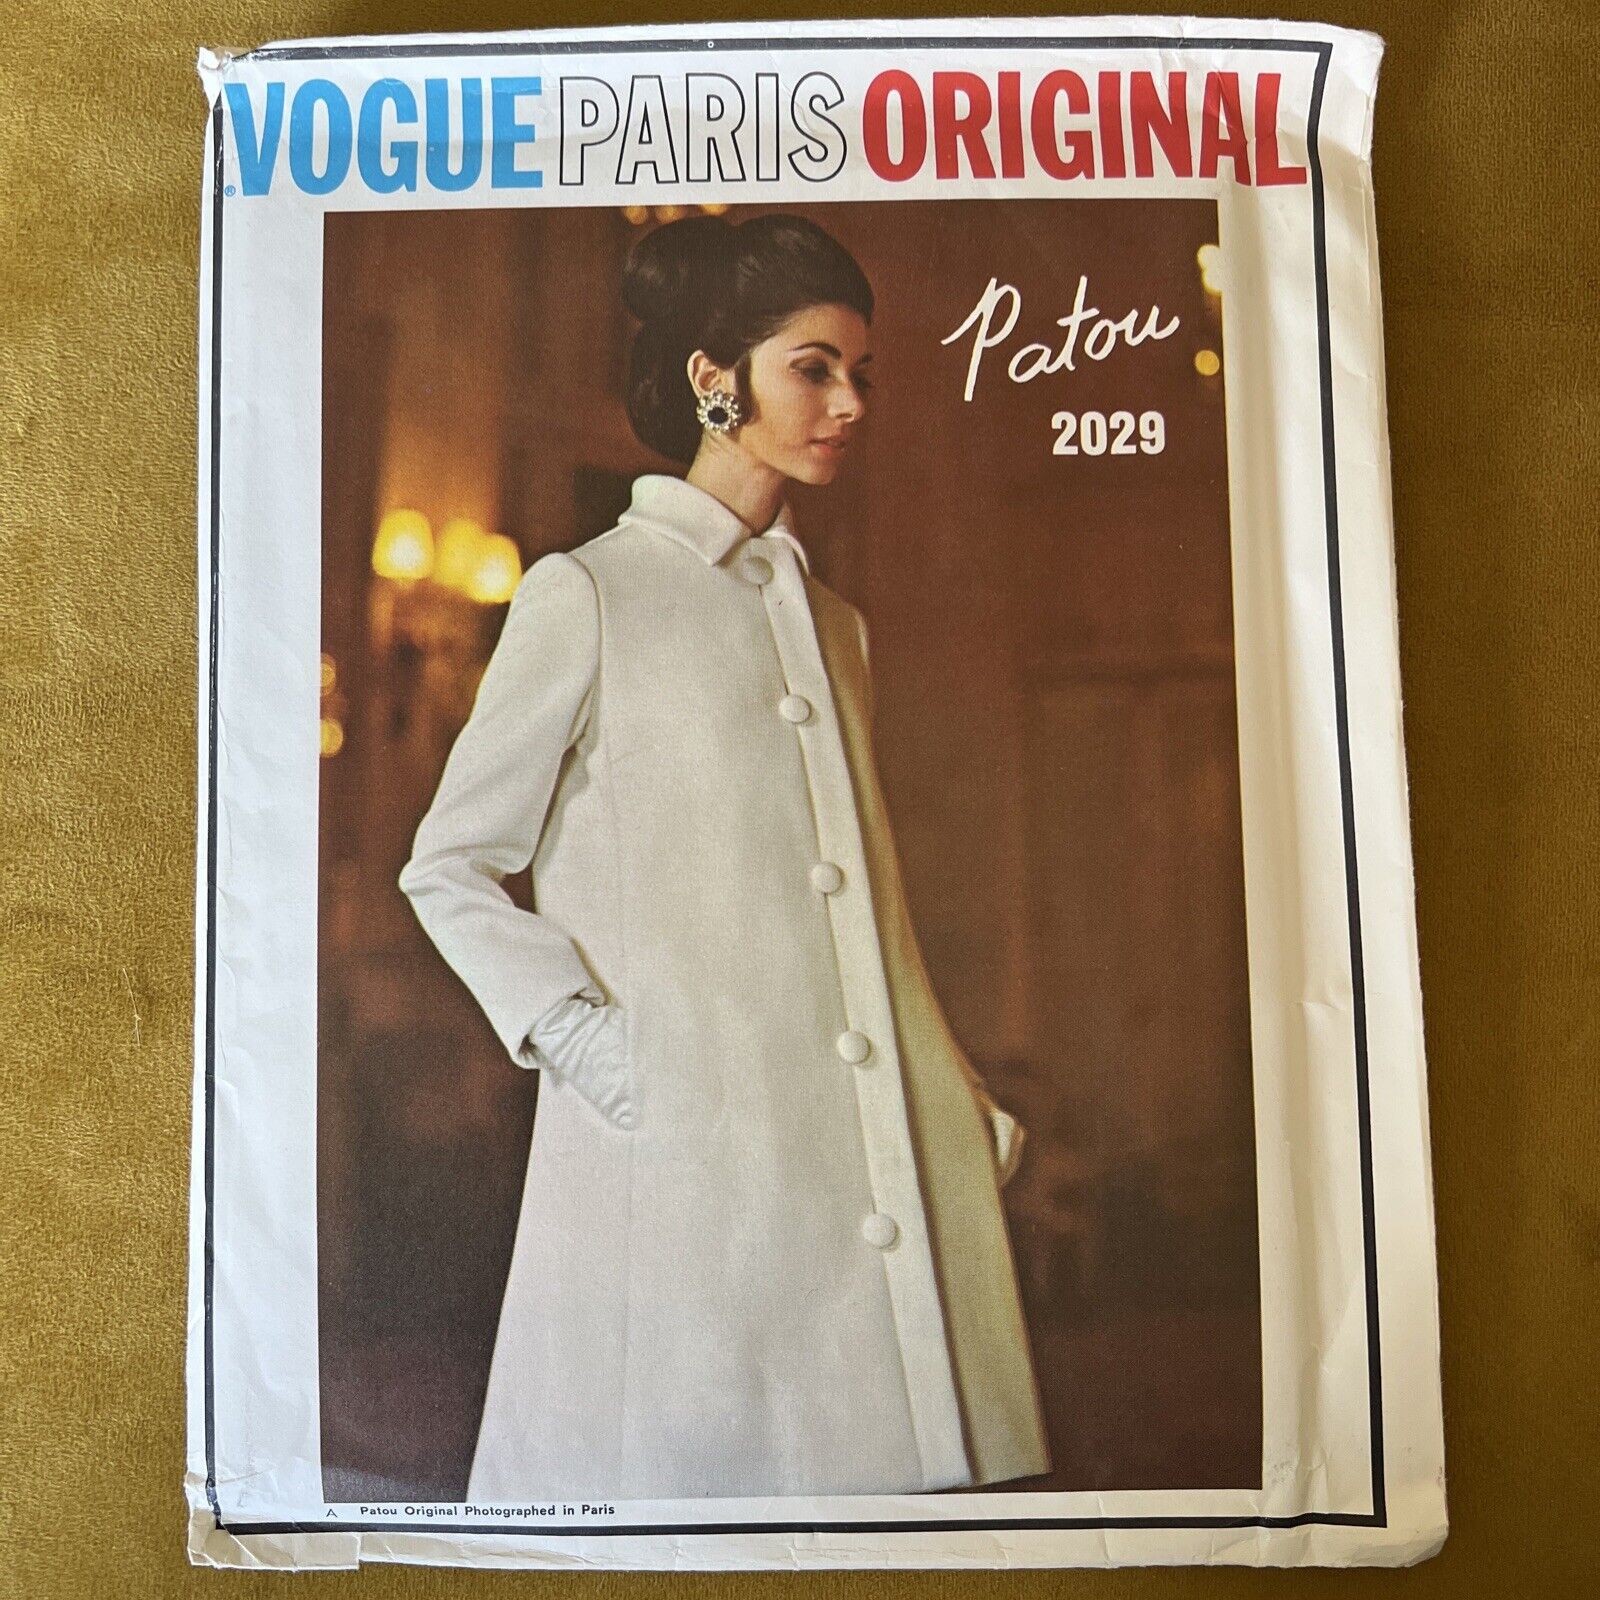 Rare 1968 VOGUE PARIS ORIGINAL Pattern by PATOU UNCUT 2029 Dress Coat Sz 14=10